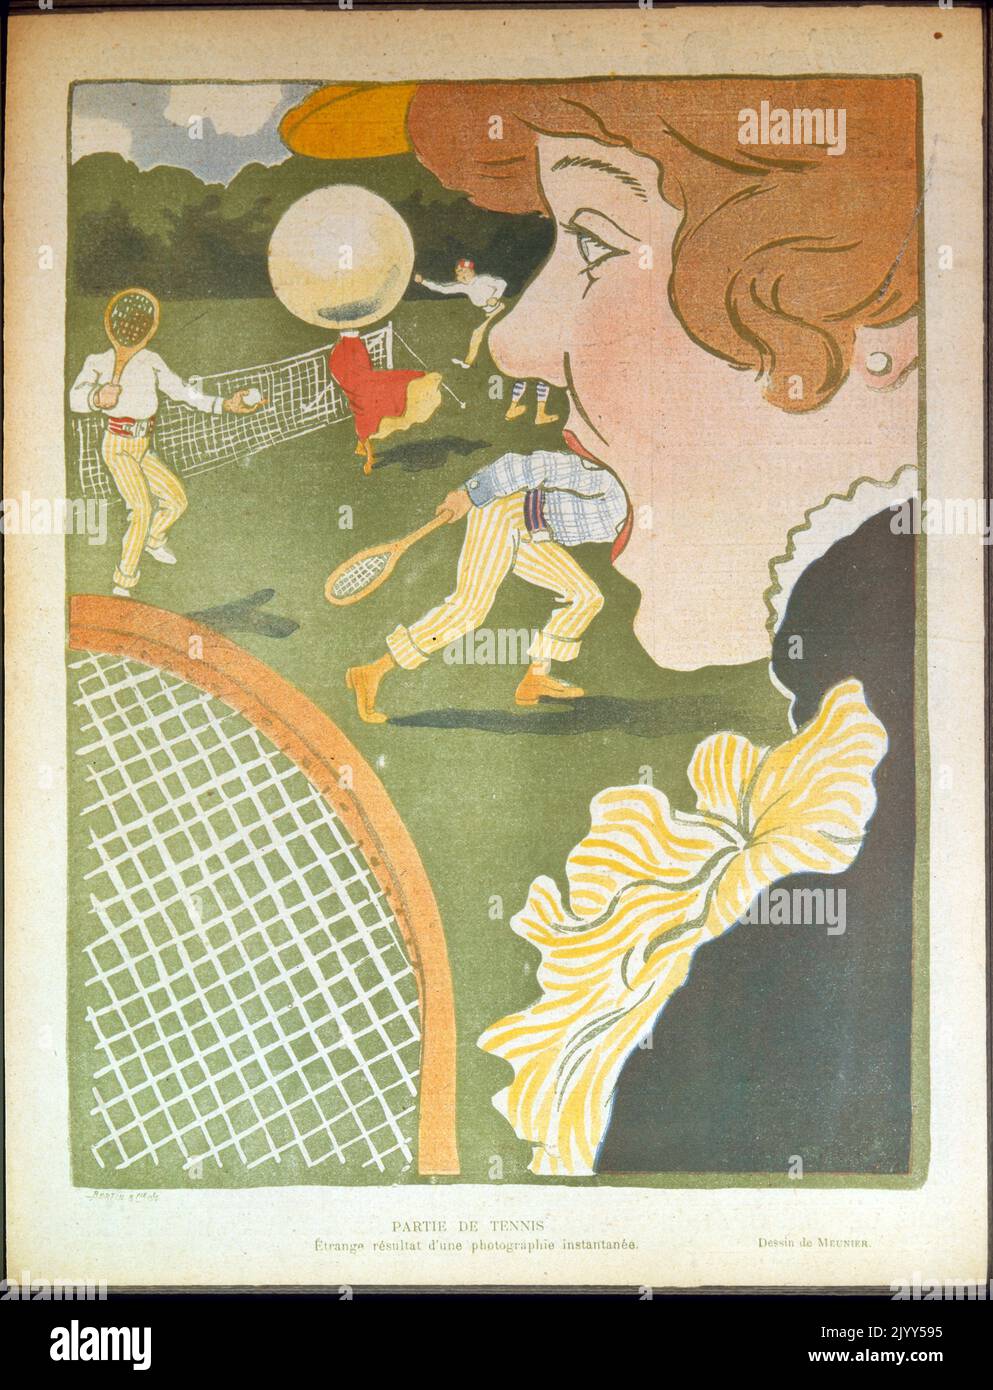 Dibujo titulado 'Partie de Tennis: Etrange resultat d'une photographie instantanee' (Juego de tenis: Extraño resultado de una instantánea) por el artista Meunier Le Rire: 22 de junio de 1901 Foto de stock